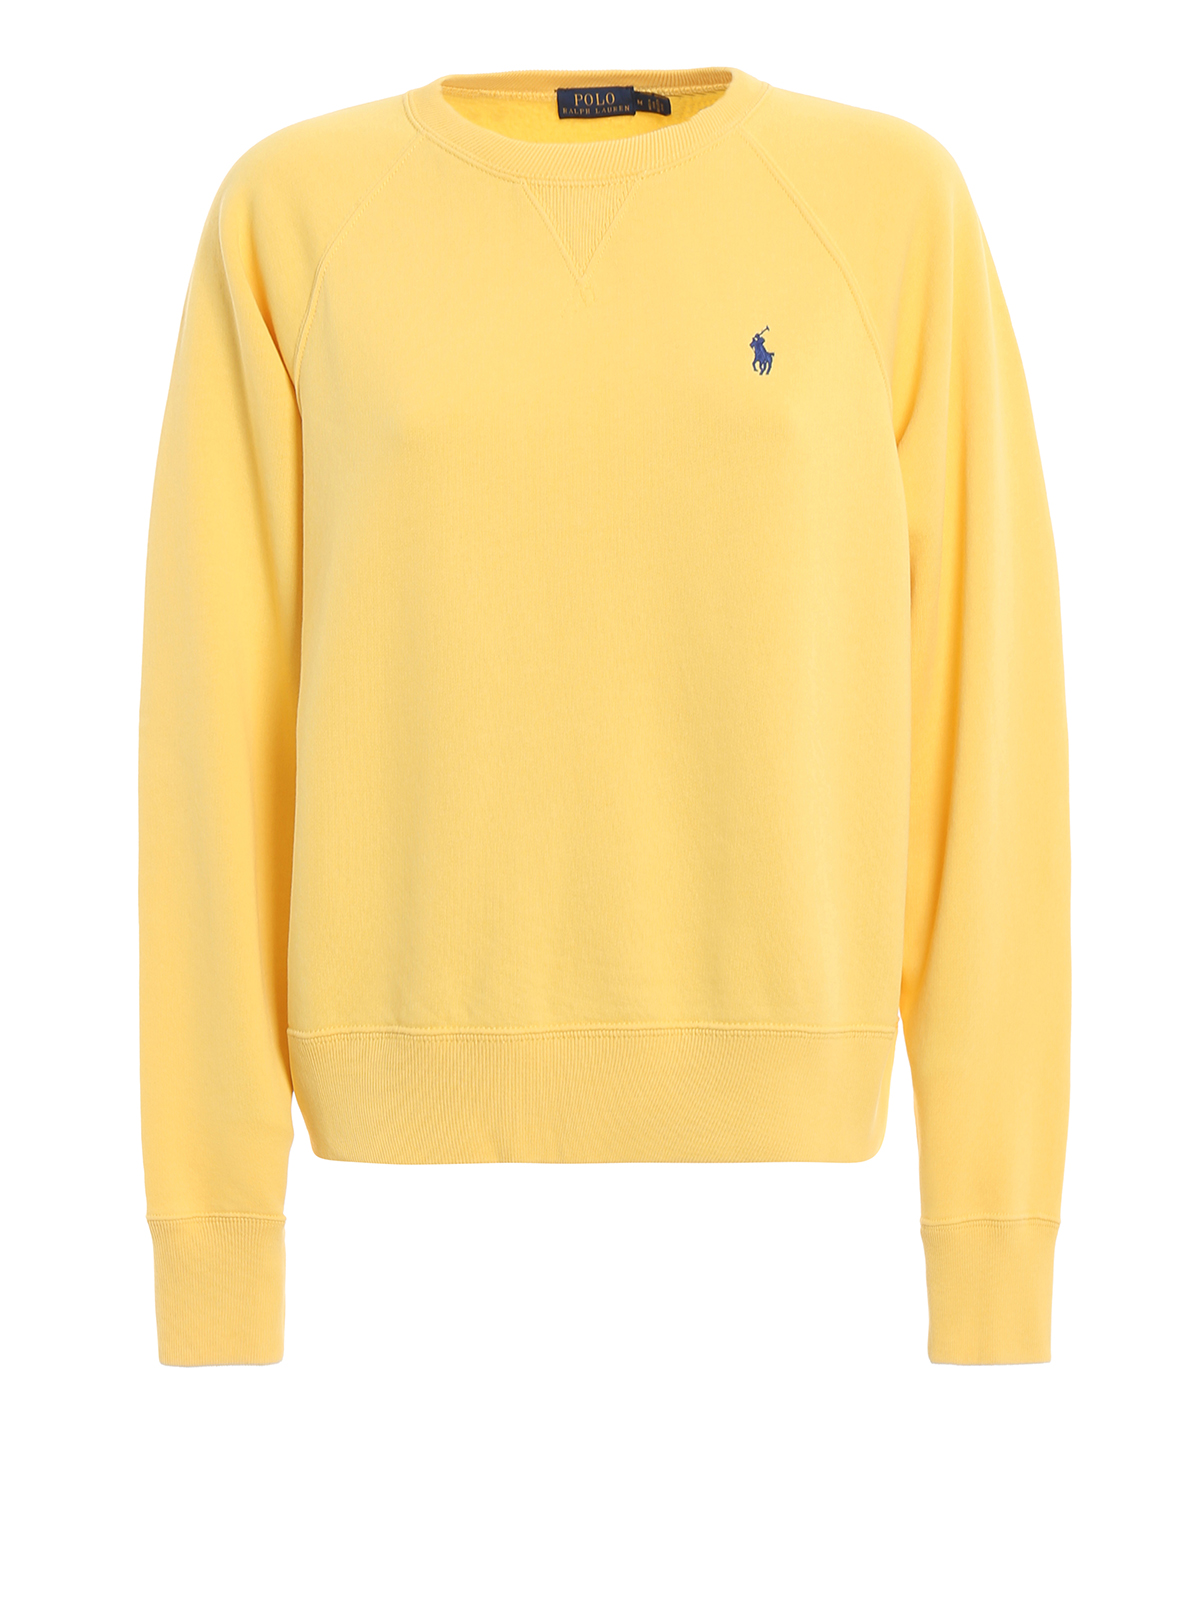 yellow ralph lauren hoodie